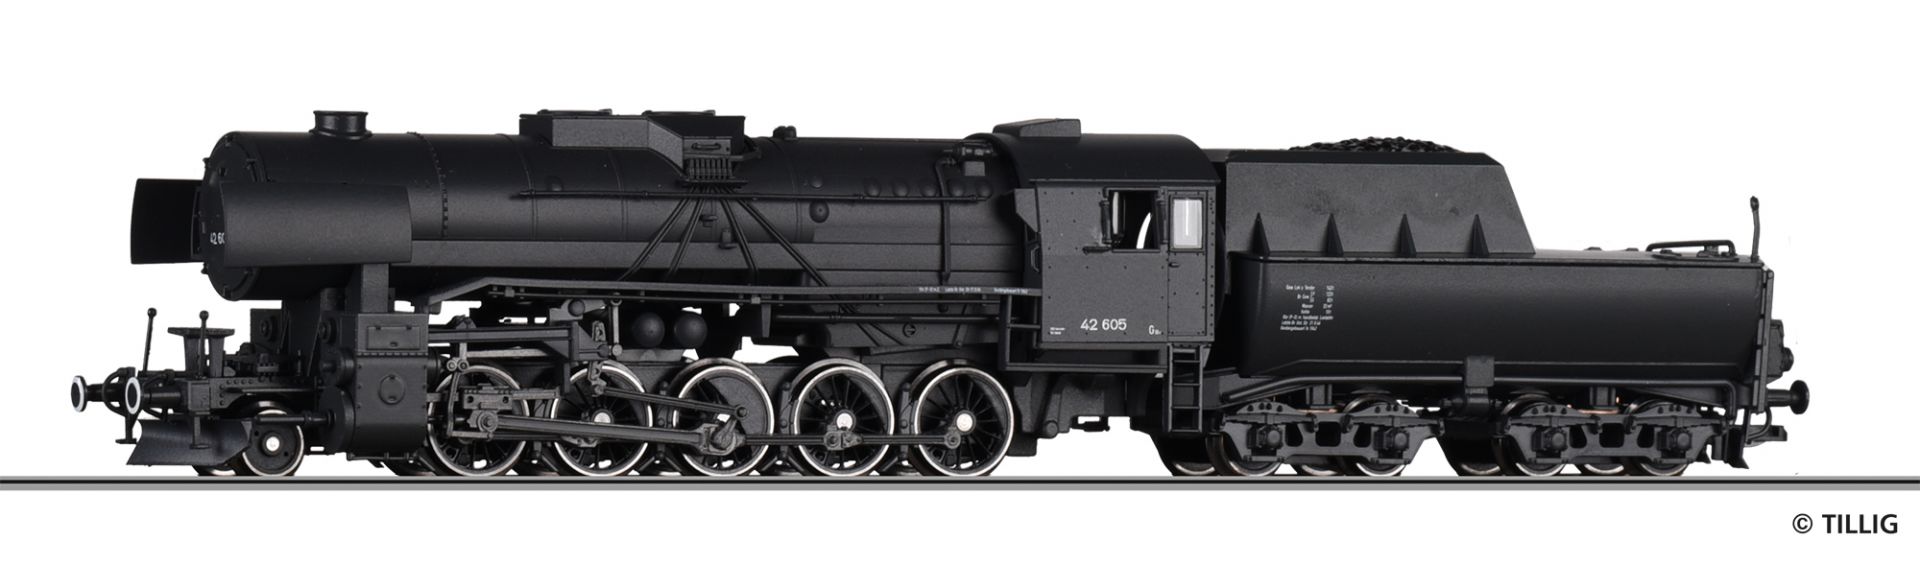 02063 | Dampflokomotive DRG